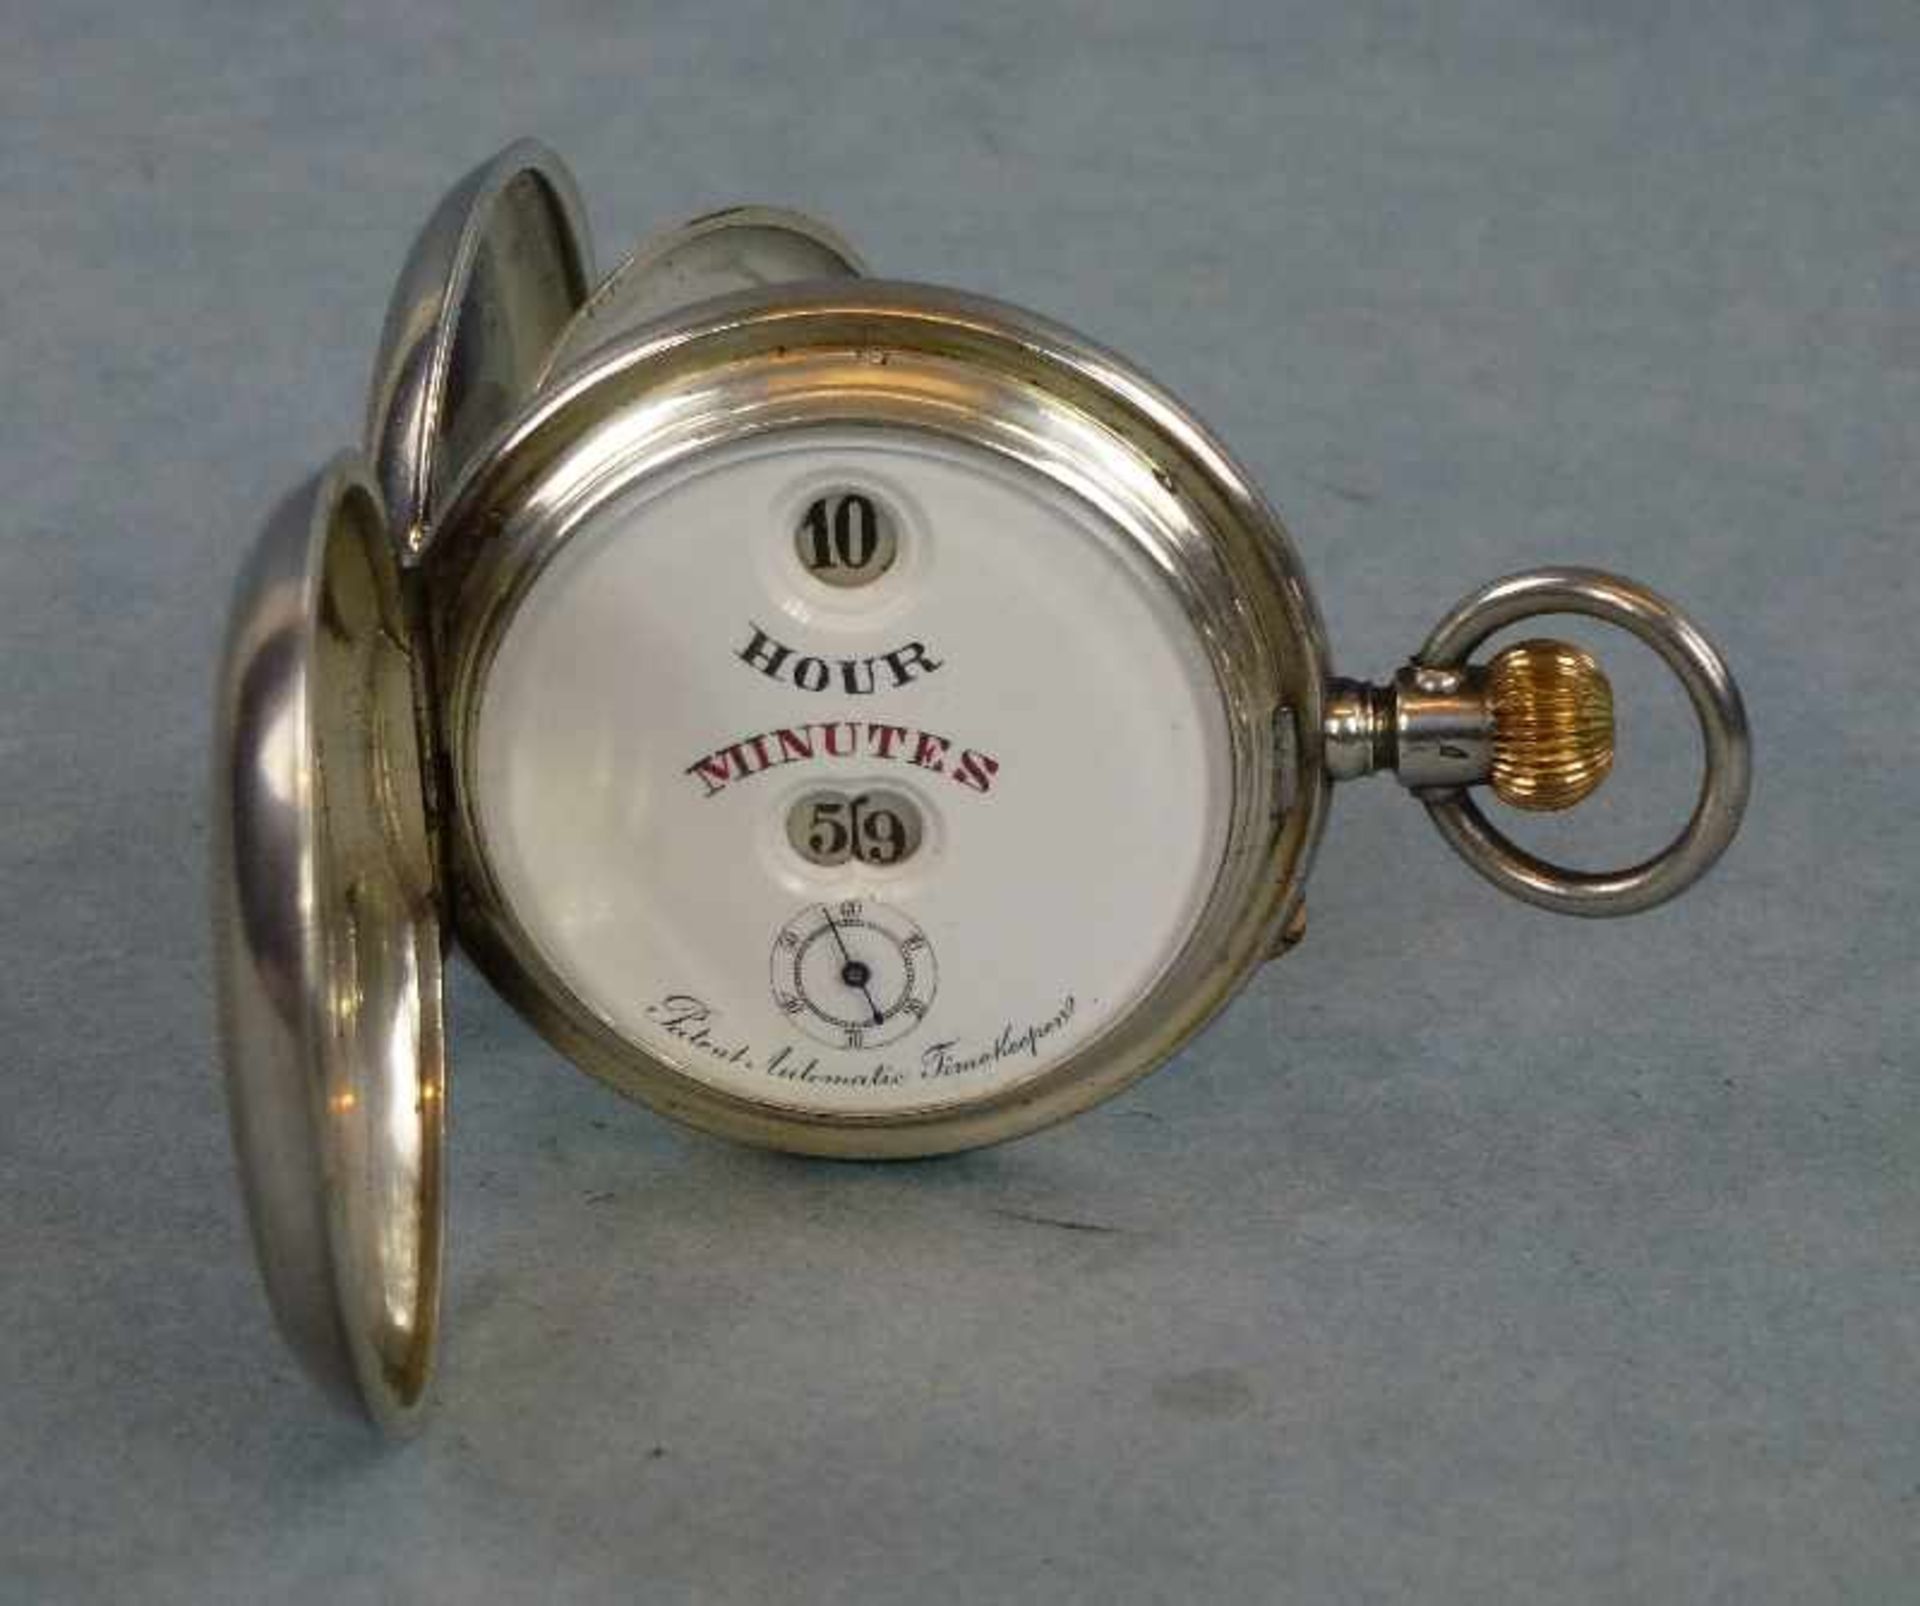 Sprungziffern-Taschenuhr, Savonette, IWC-Patent Pallweber, um 1910 935er Silber, guillochiert, 3